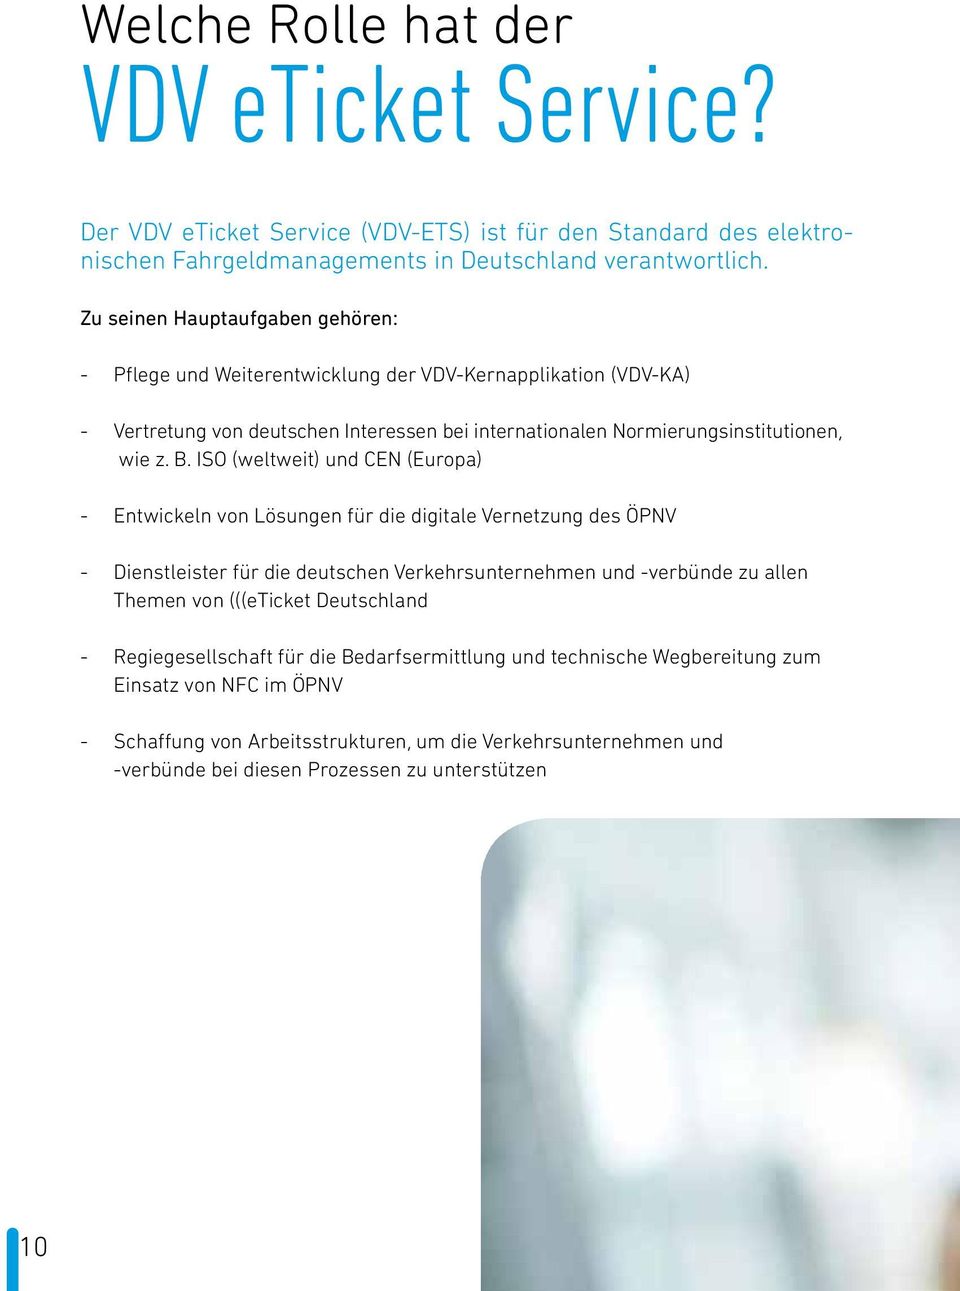 ISO (weltweit) und CEN (Europa) - Entwickeln von Lösungen für die digitale Vernetzung des ÖPNV - Dienstleister für die deutschen Verkehrsunternehmen und -verbünde zu allen Themen von (((eticket